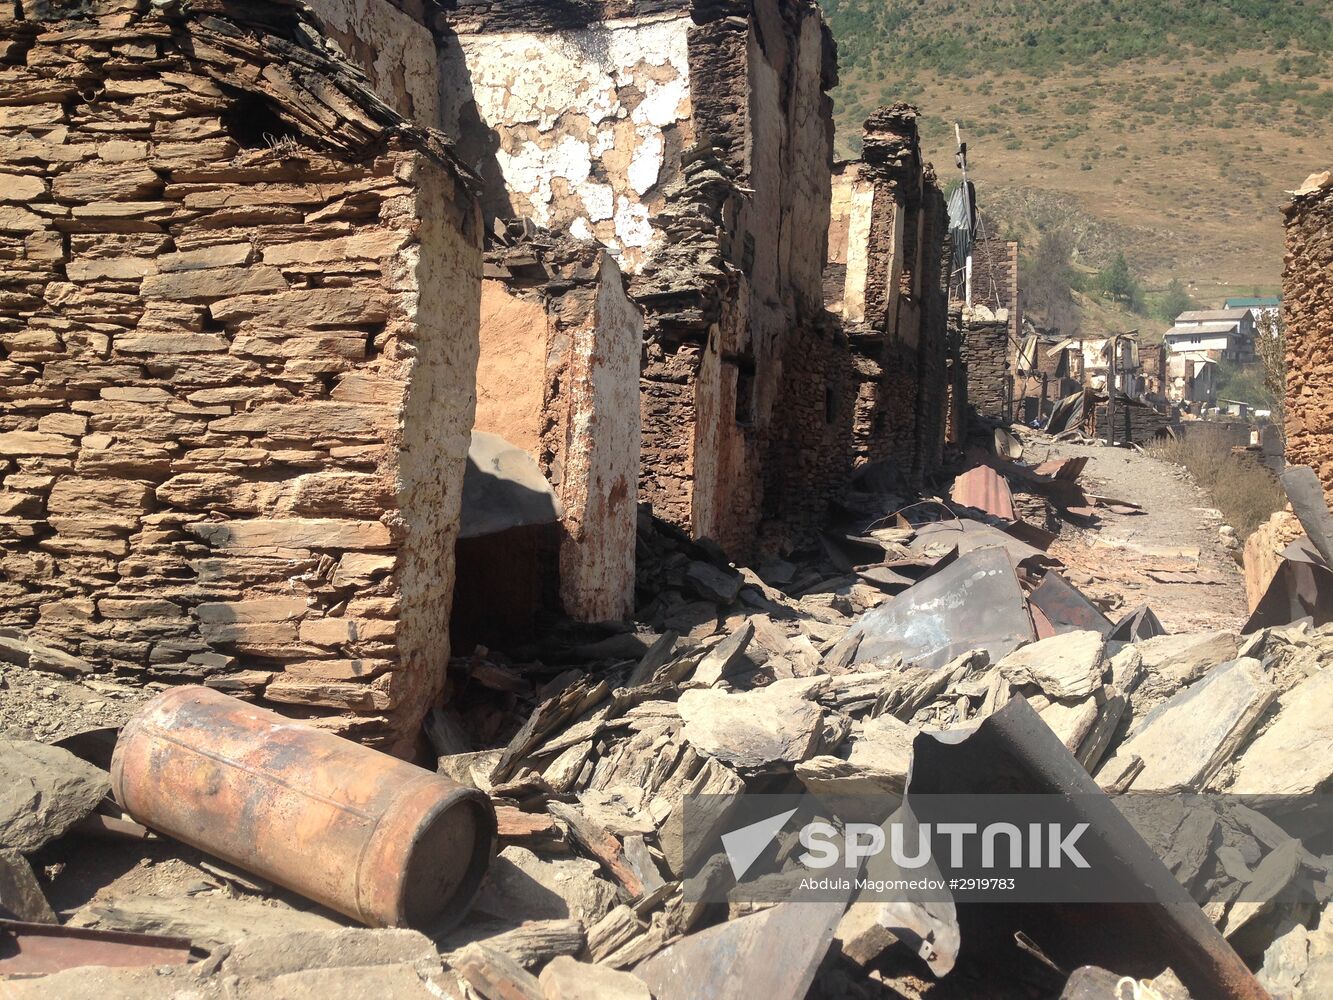 Aftermath of fire in Mokok village in Dagestan